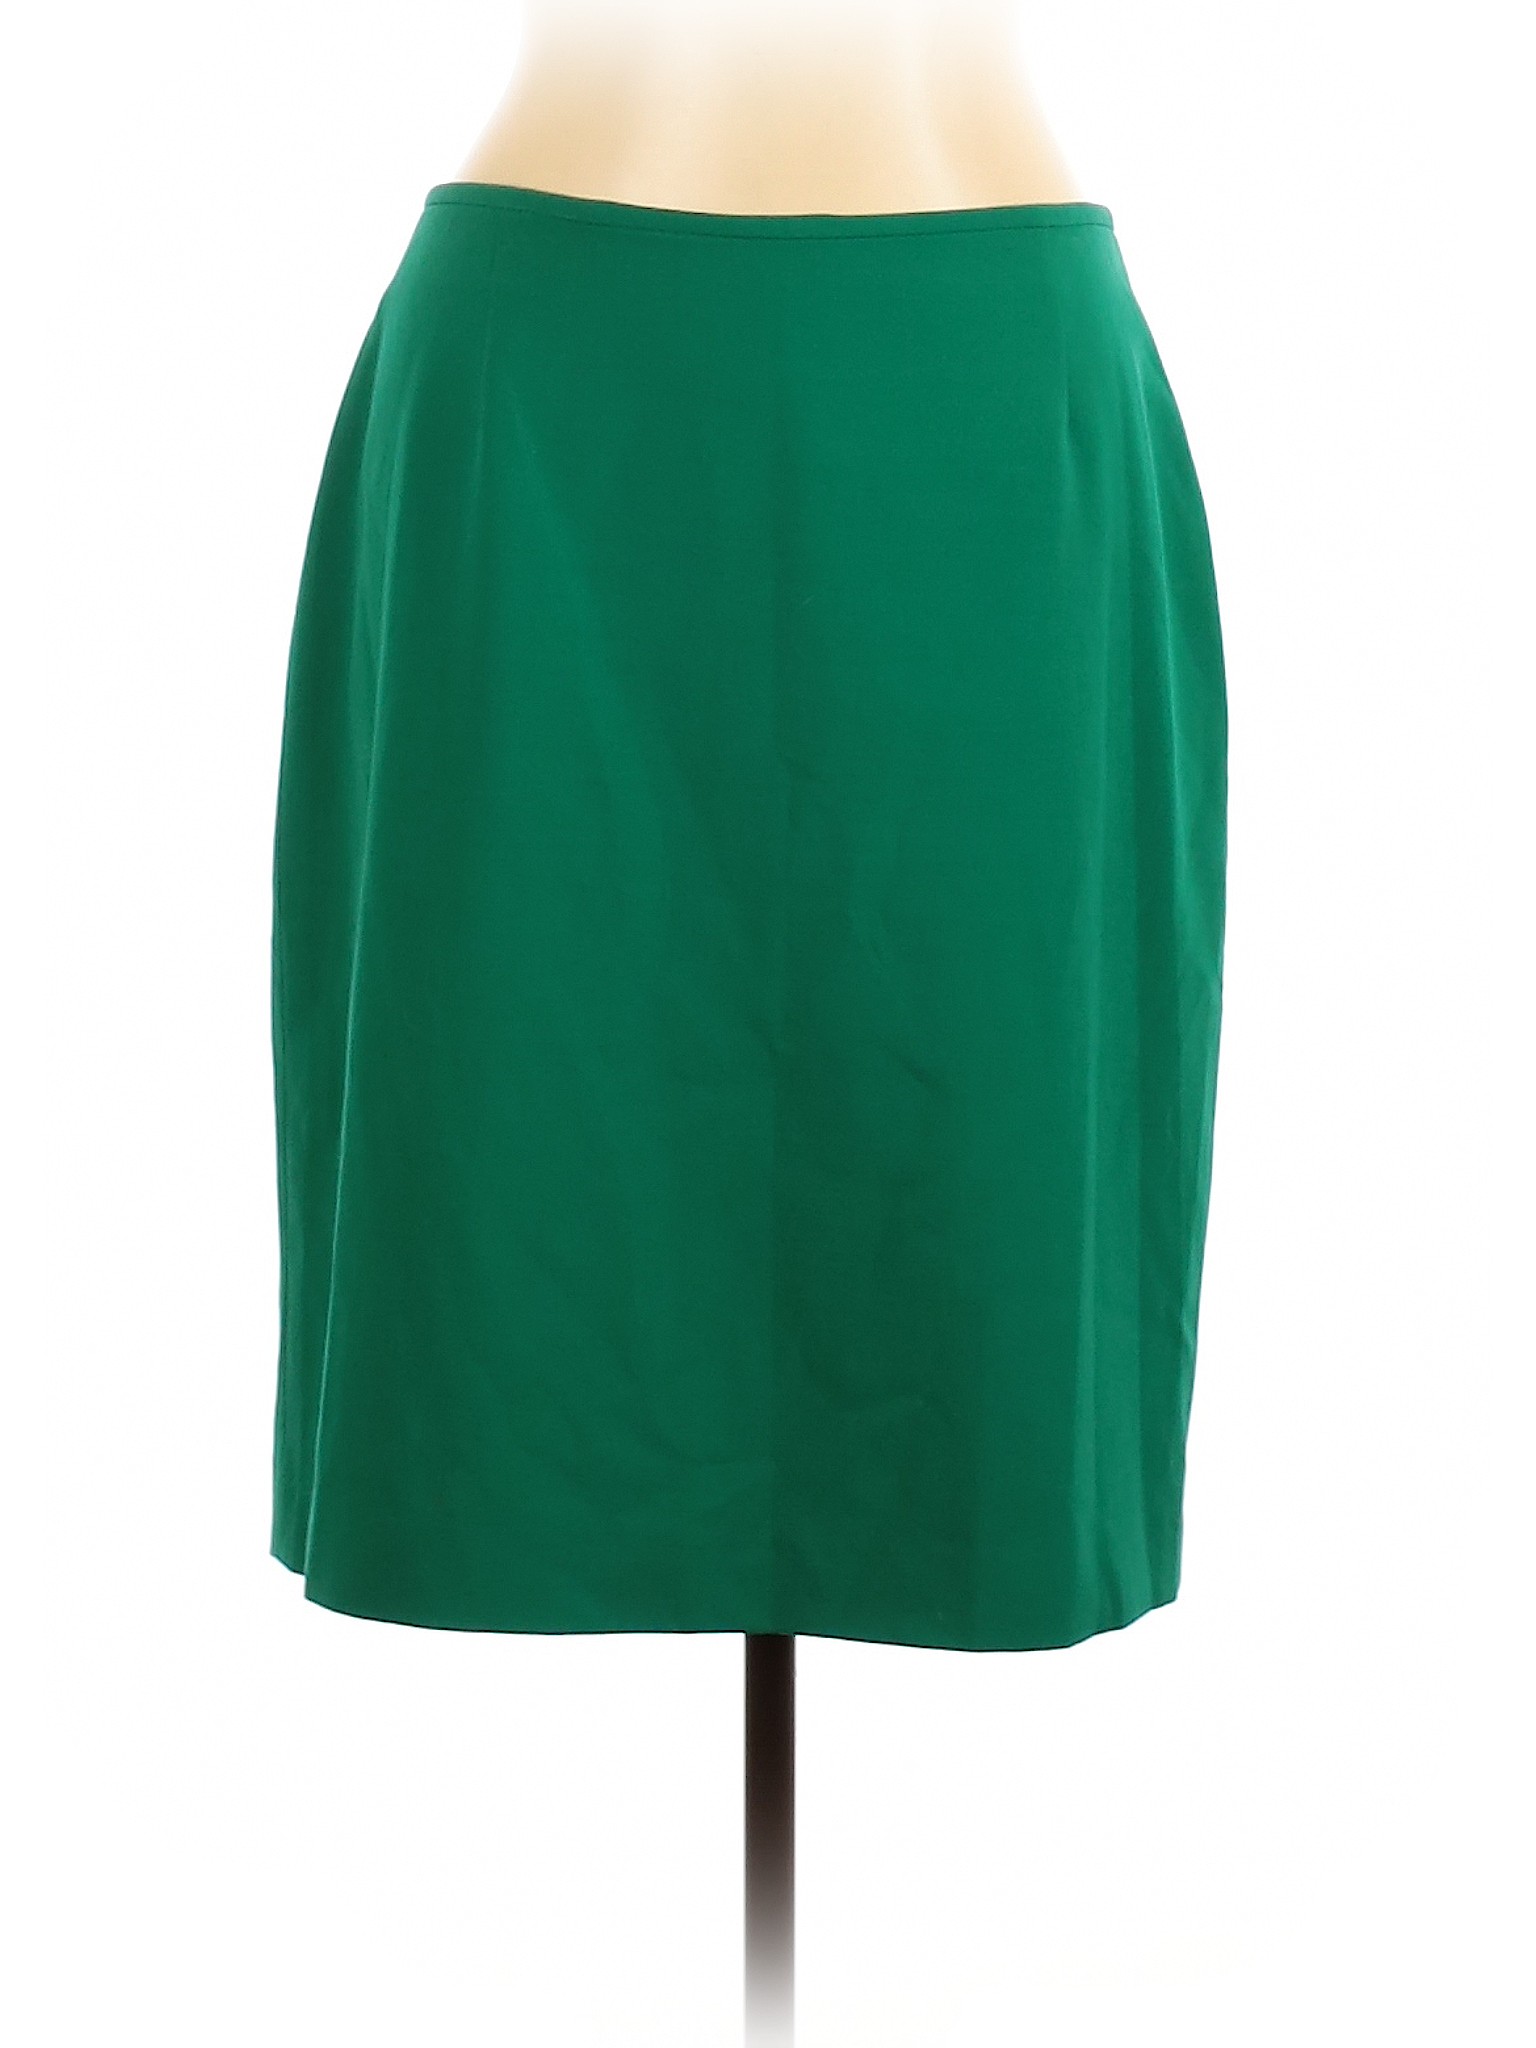 Unbranded Women Green Casual Skirt 10 | eBay